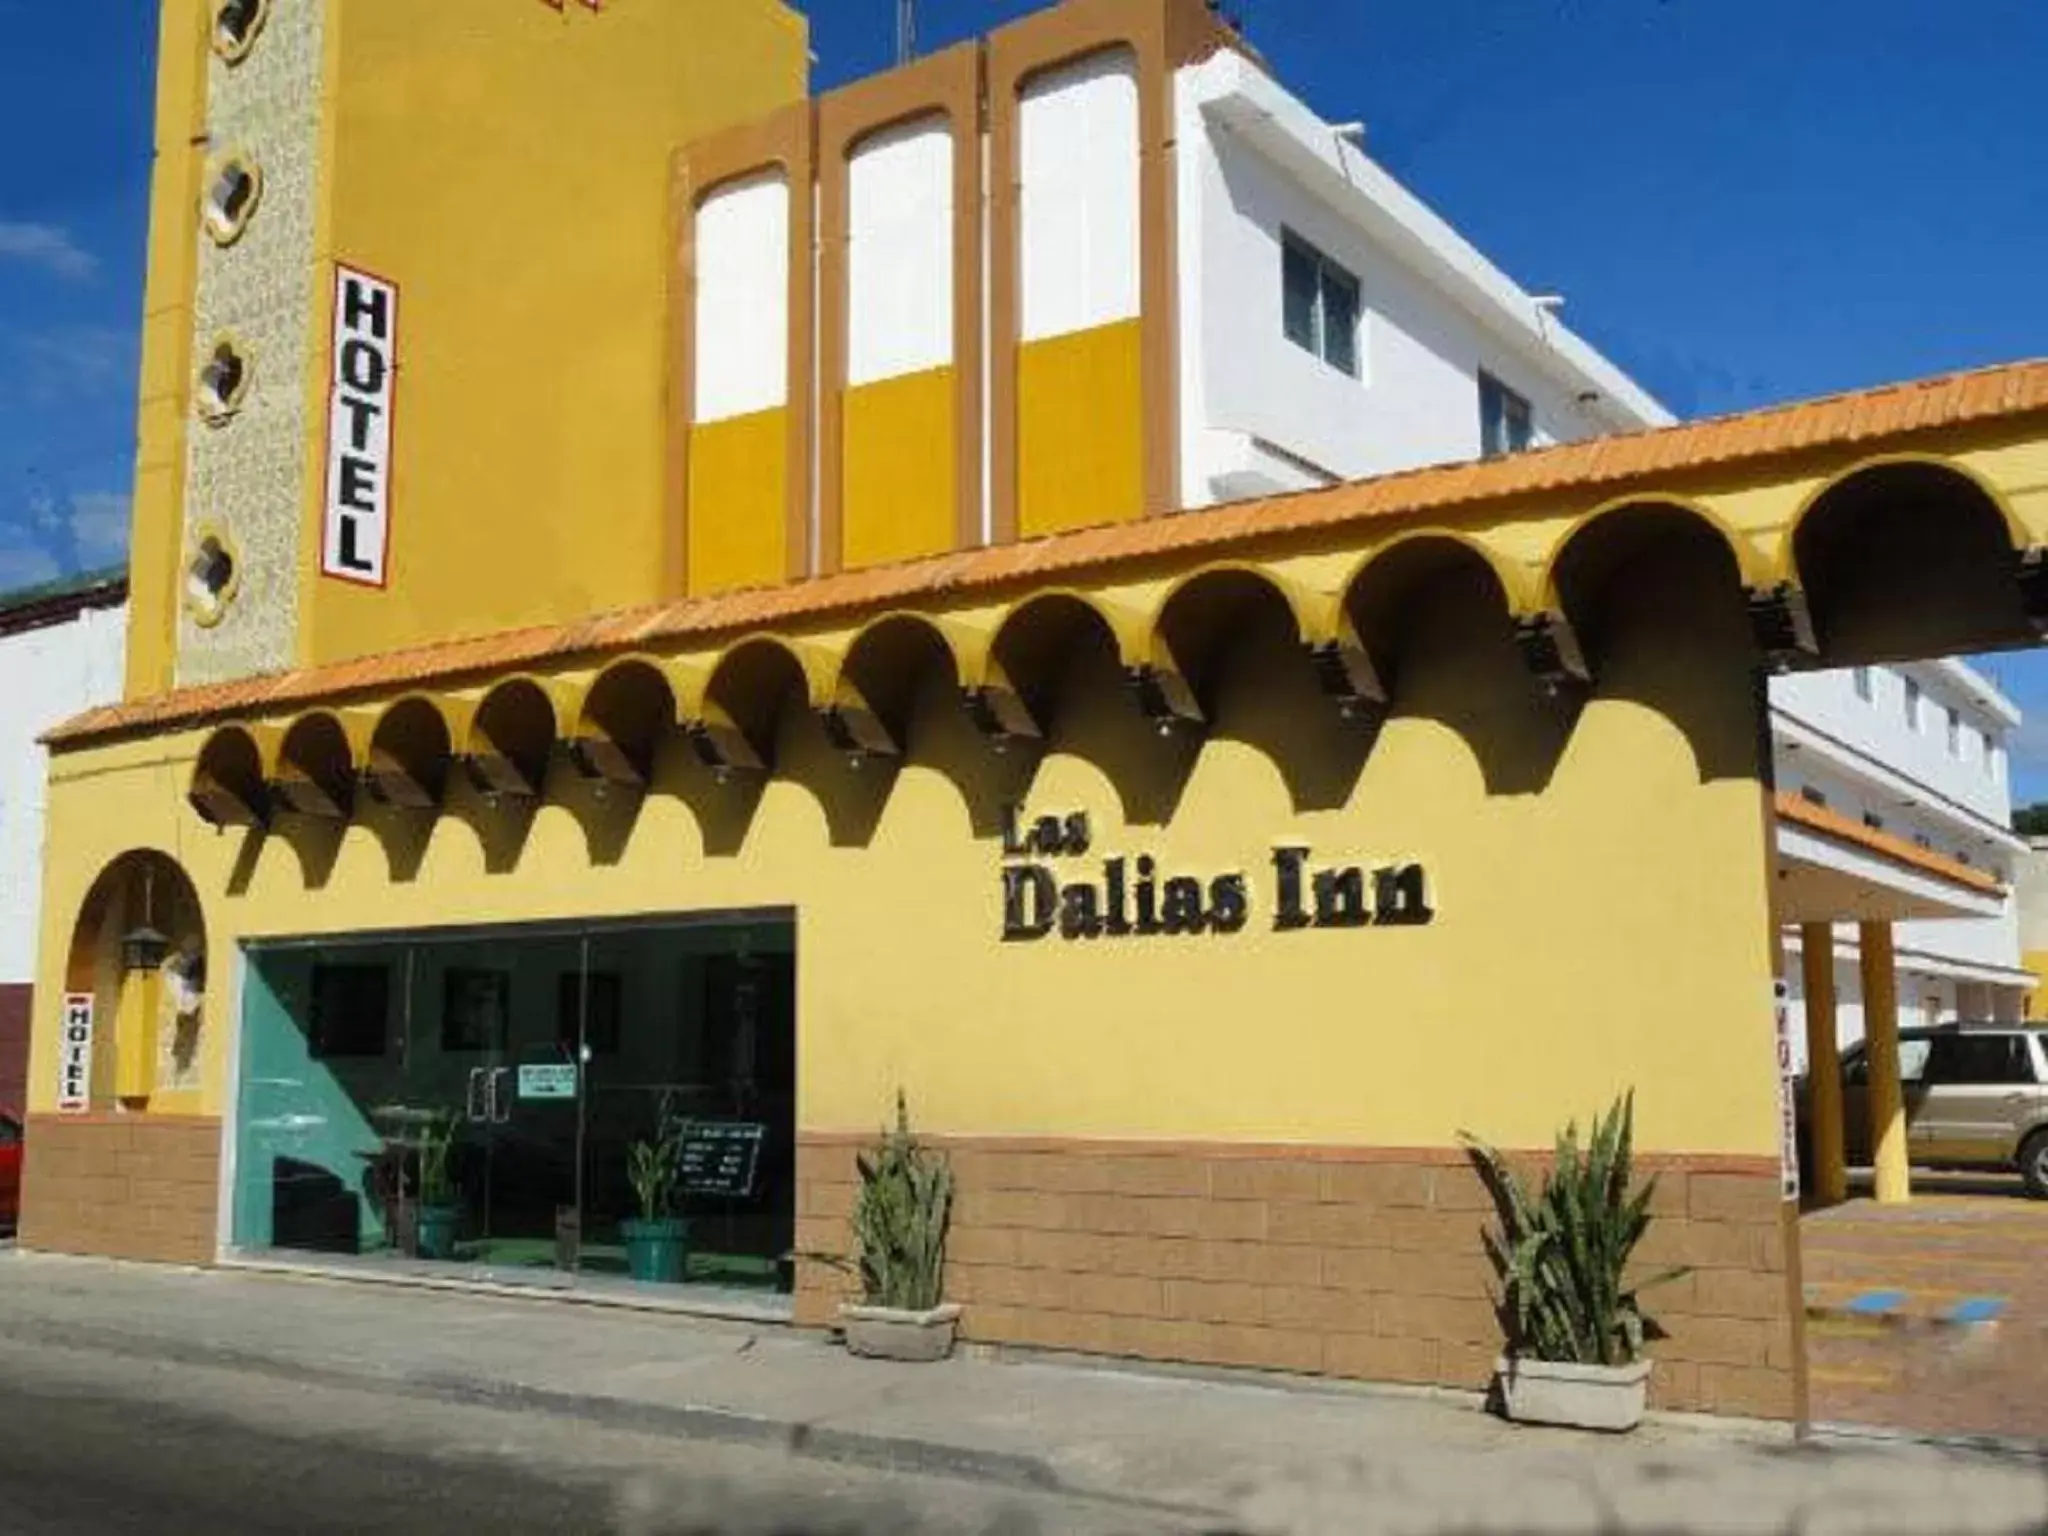 Facade/entrance, Property Building in Hotel Las Dalias Inn